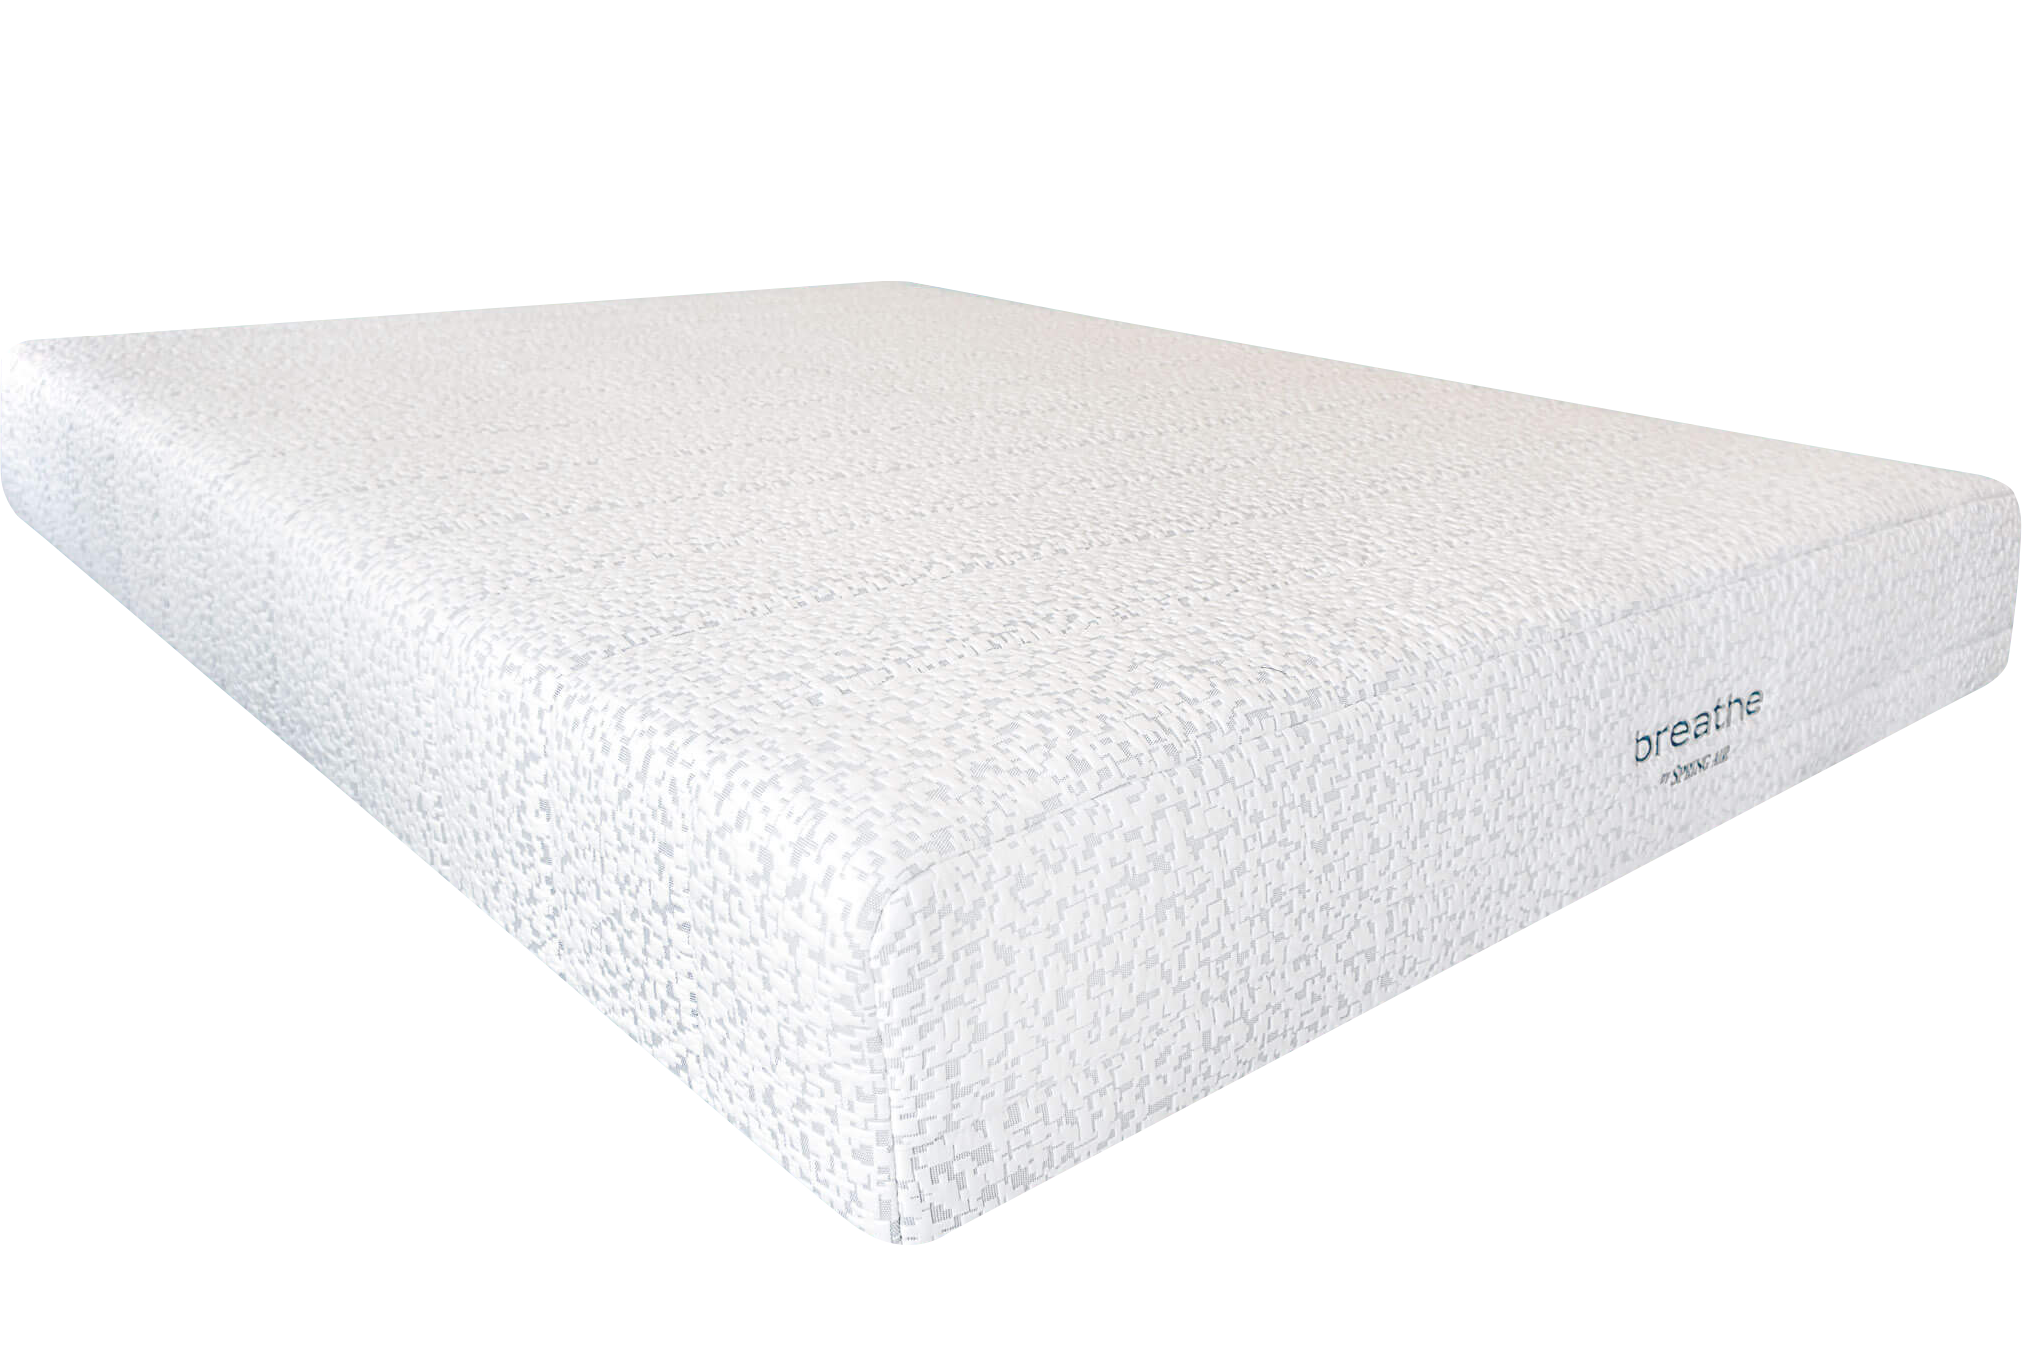 babystart hypoallergenic foam mattress 120x60cm